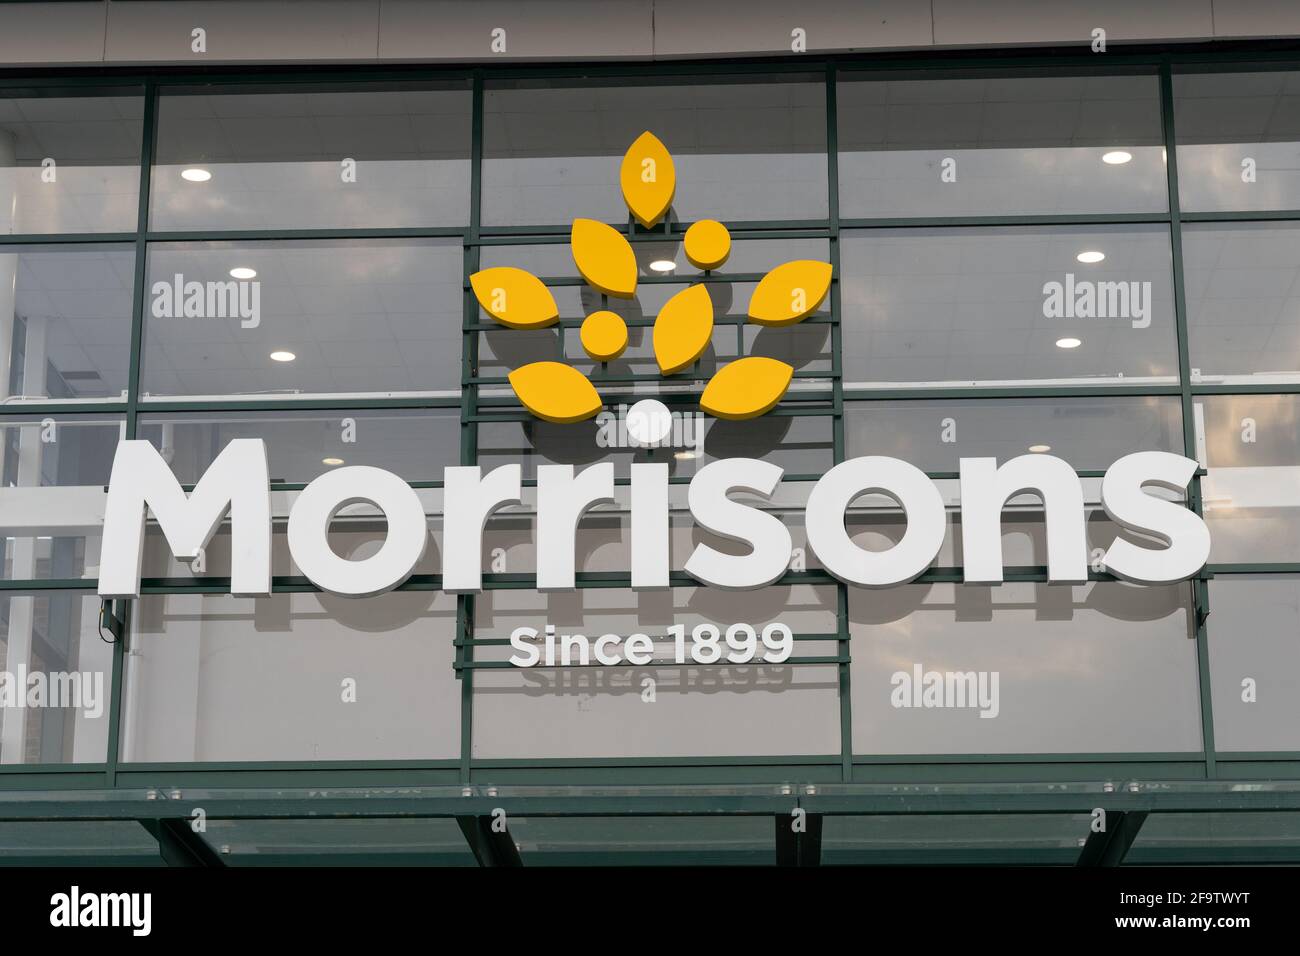 Marque Morrisons et logo accroché dans panneau de verre de l'avant de magasin, supermarché, Angleterre Banque D'Images